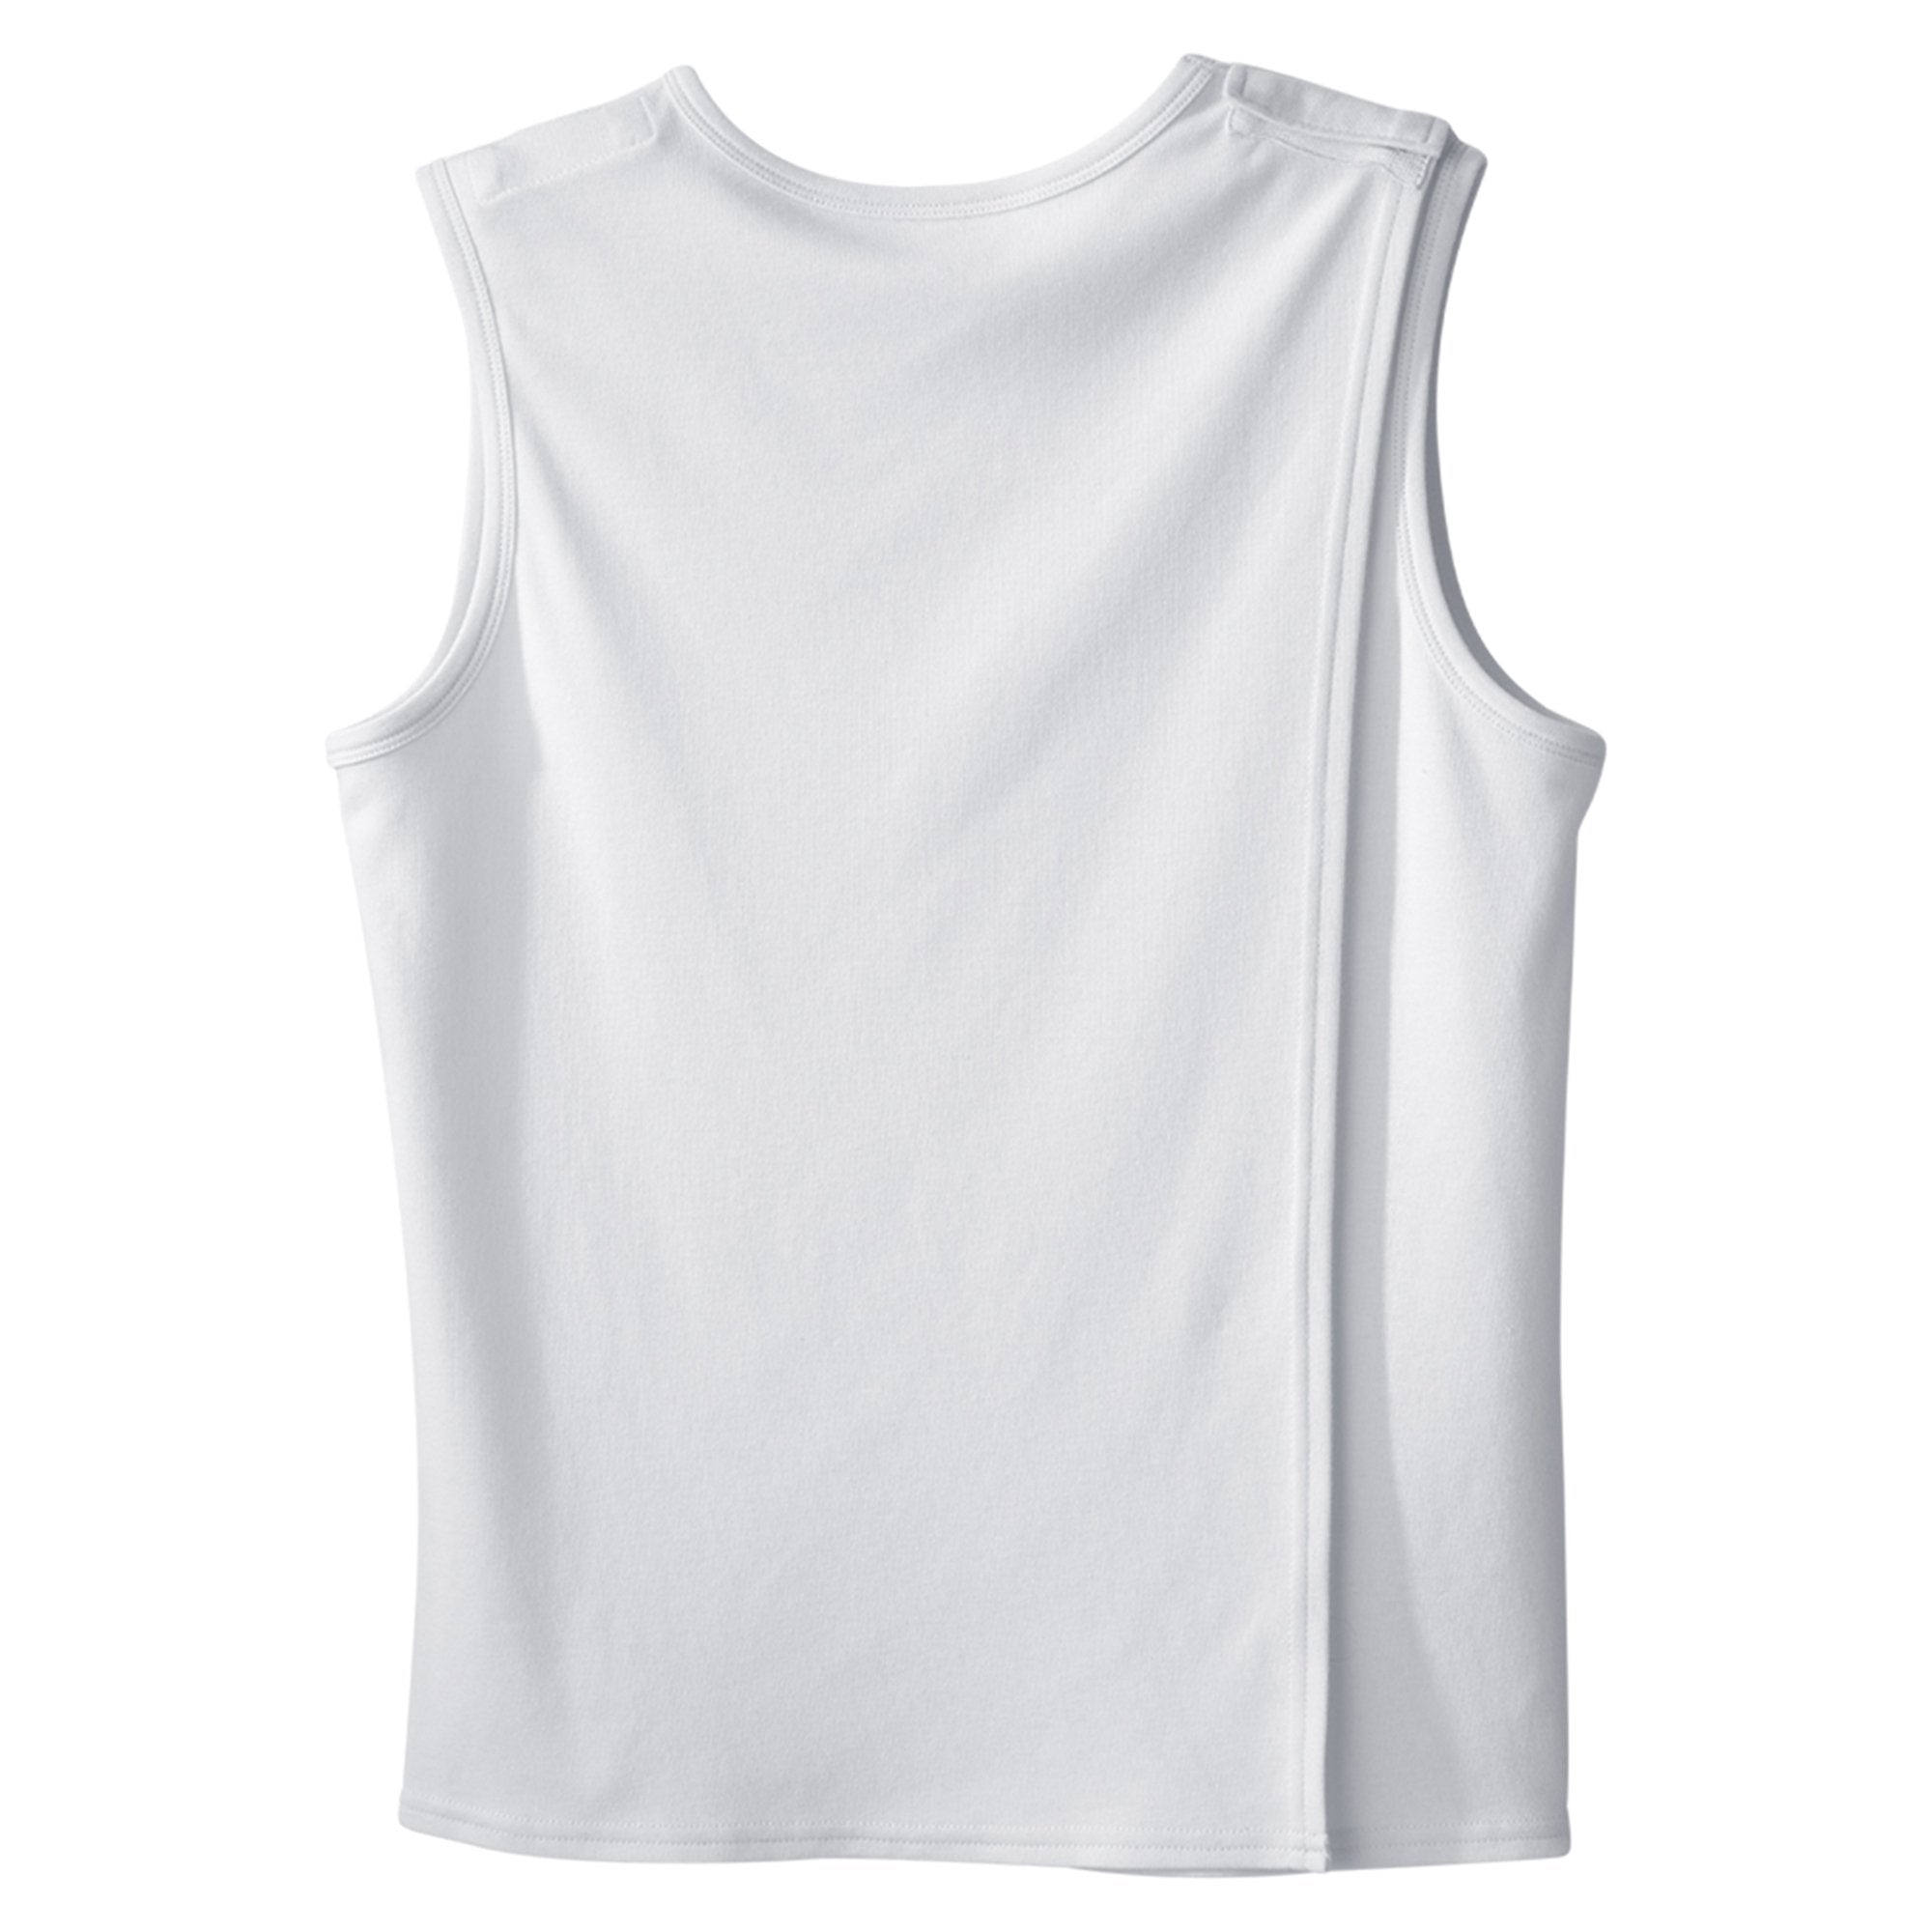 Adaptive Undershirt Silverts 2X-Large White Without Pockets Sleeveless Female